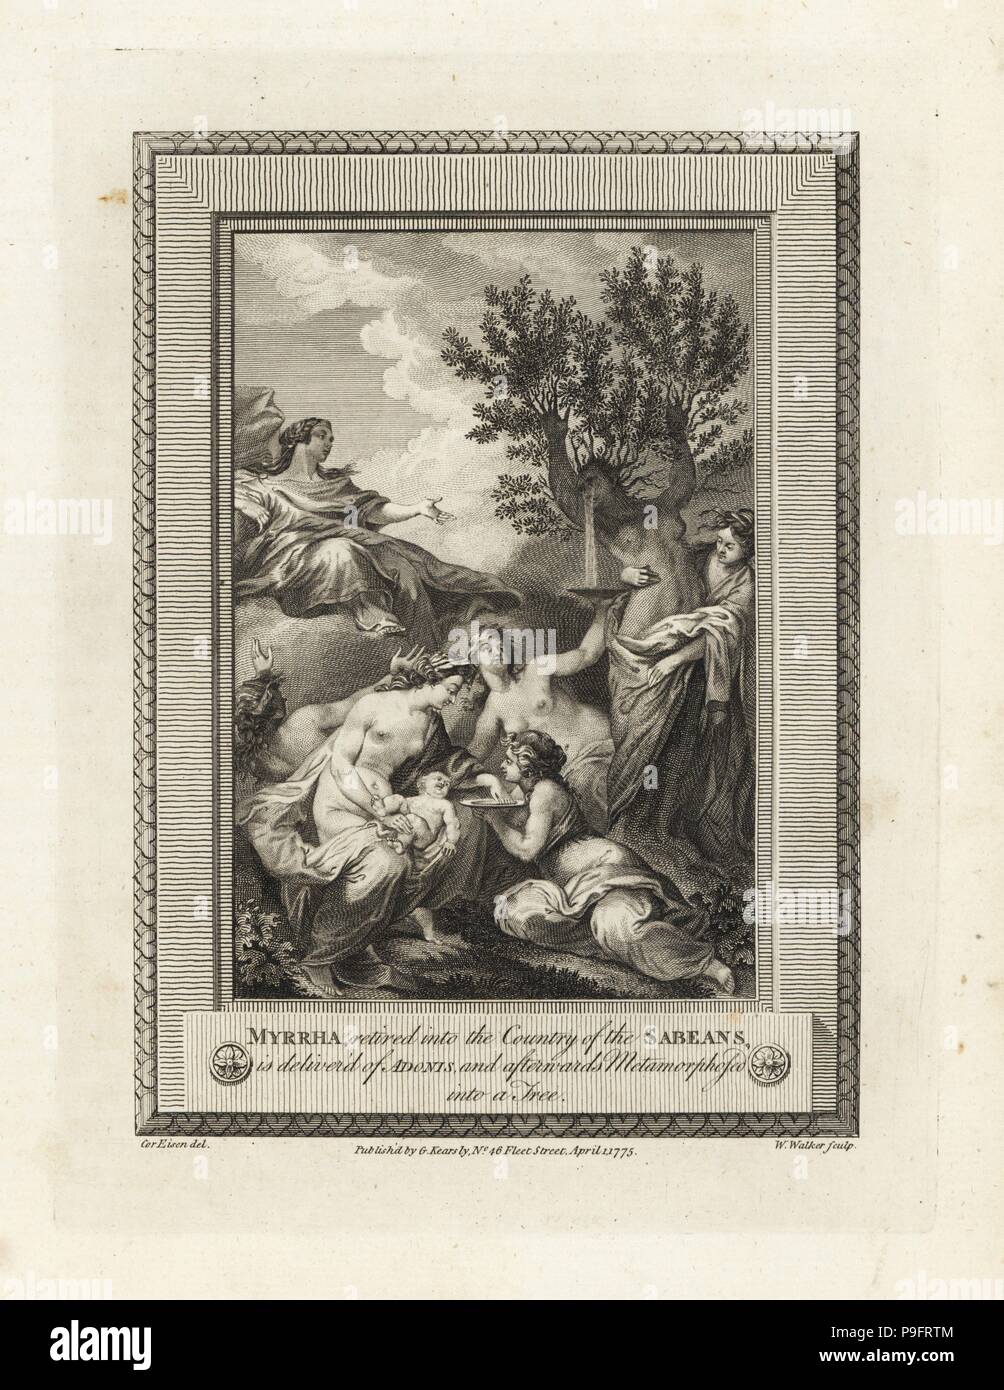 Sogenannte Myrrha gebiert Adonis und ist in einem myrrhe Baum verwandelt. Kupferstich von W. Walker nach einer Illustration von Charles Eisen aus der Kupferplatte Magazin oder monatliche Schatz, G. Kearsley, London, 1778. Stockfoto